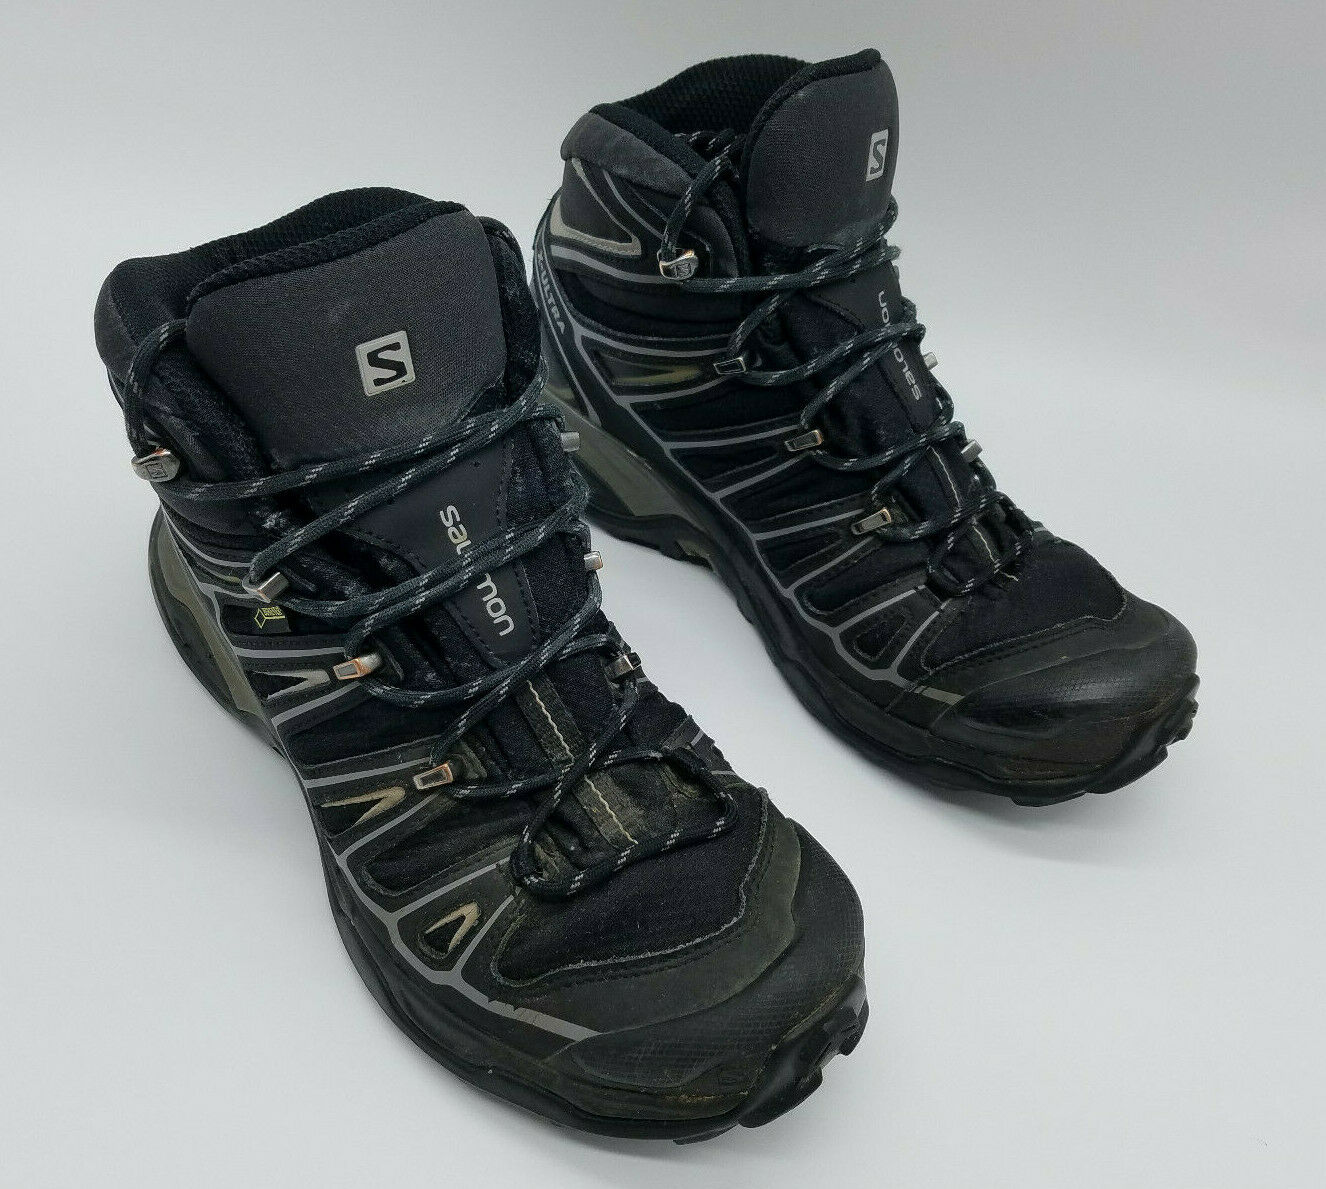 Salomon X Ultra Mid 2 GTX Gore-Tex Men's Trail Hiking Boots Black 370770 Sz 8.5